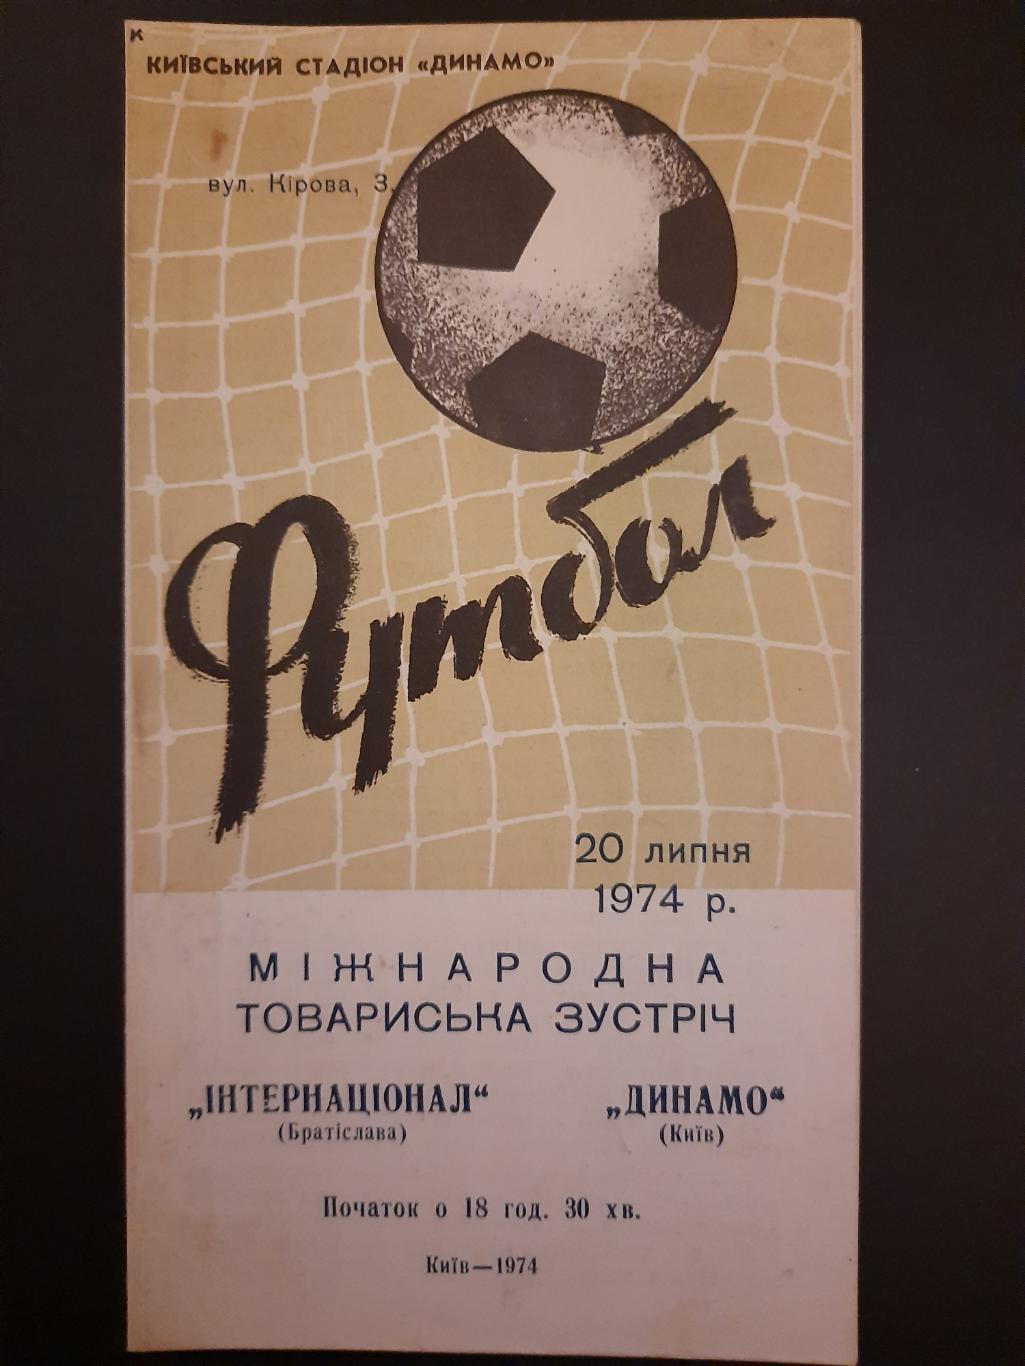 Динамо Киев - Интернационале Братислава 20.07.1974.